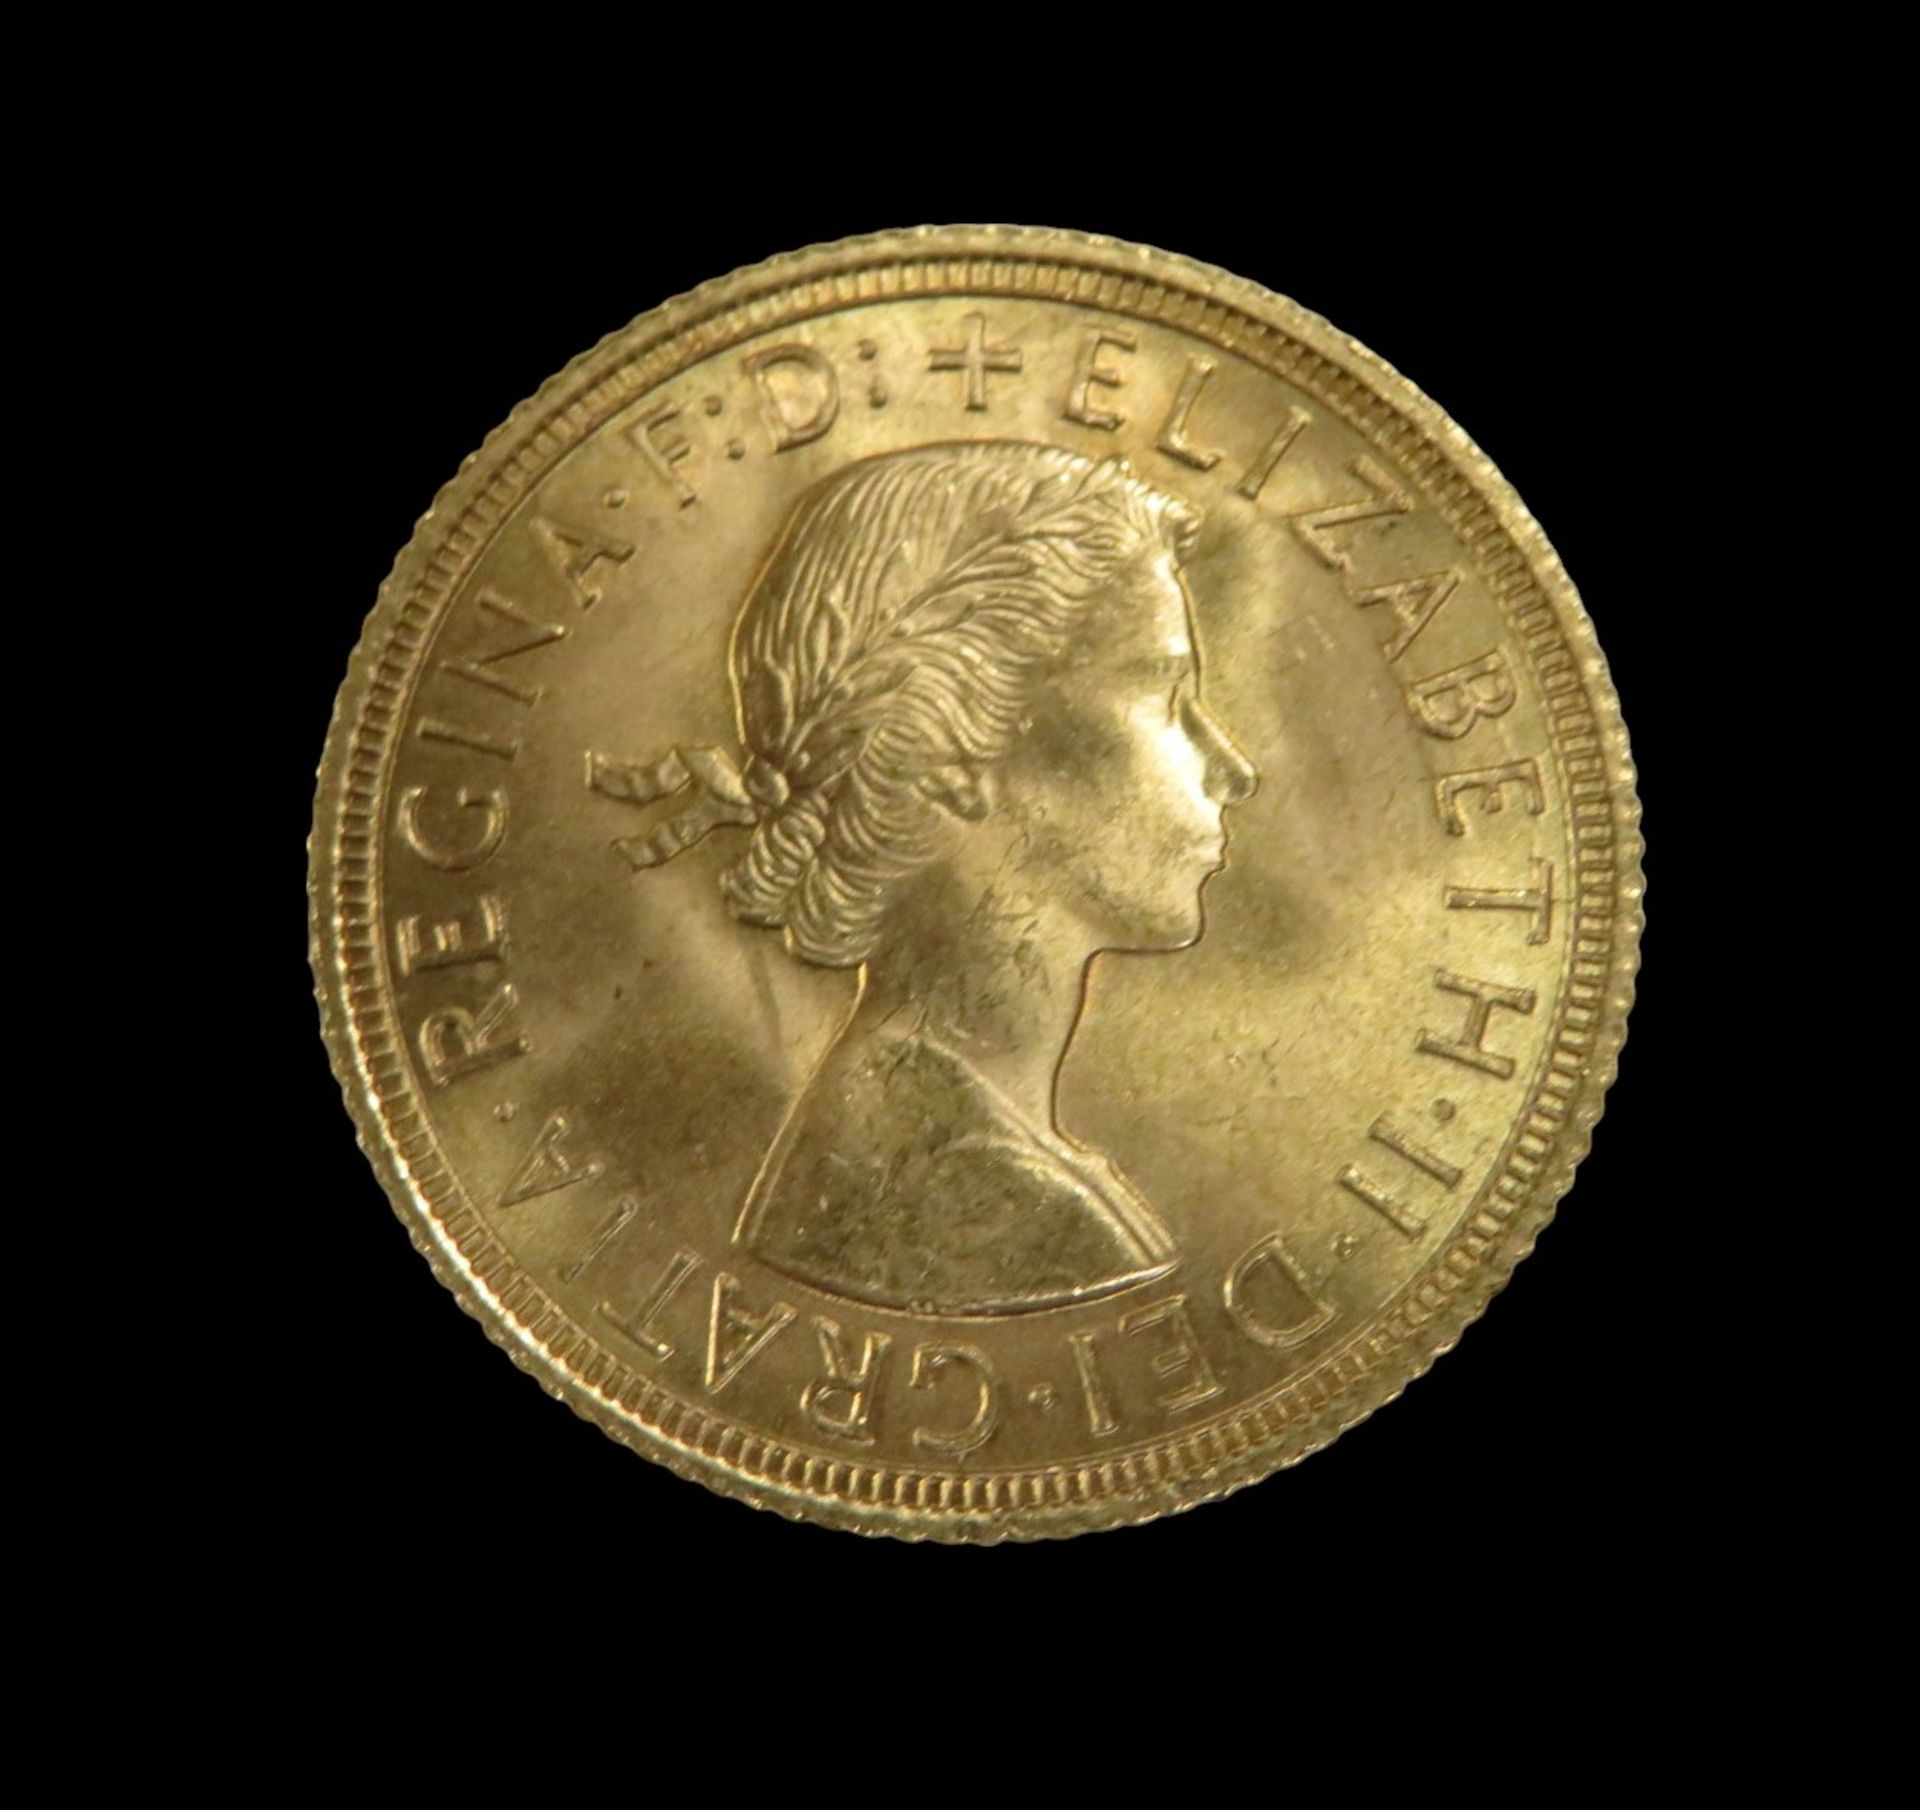 Goldmünze, 1 Pfund, Sovereign, Elizabeth II, 1958, Gold 916/000, 7,99 g, d 2,2 cm.